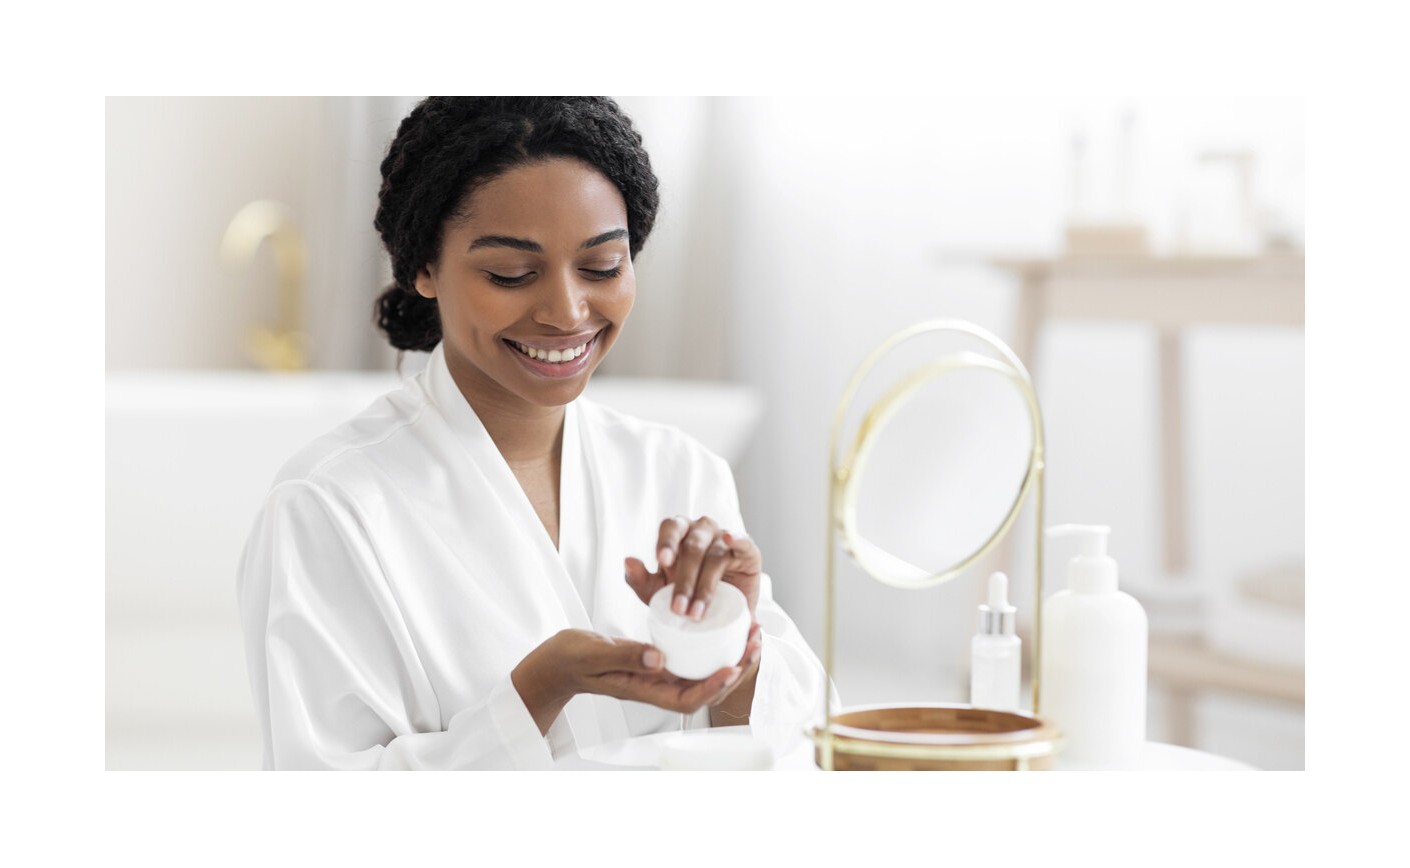 Kosmetyczny must-have | TOP produkty do pielęgnacji, które warto posiadać